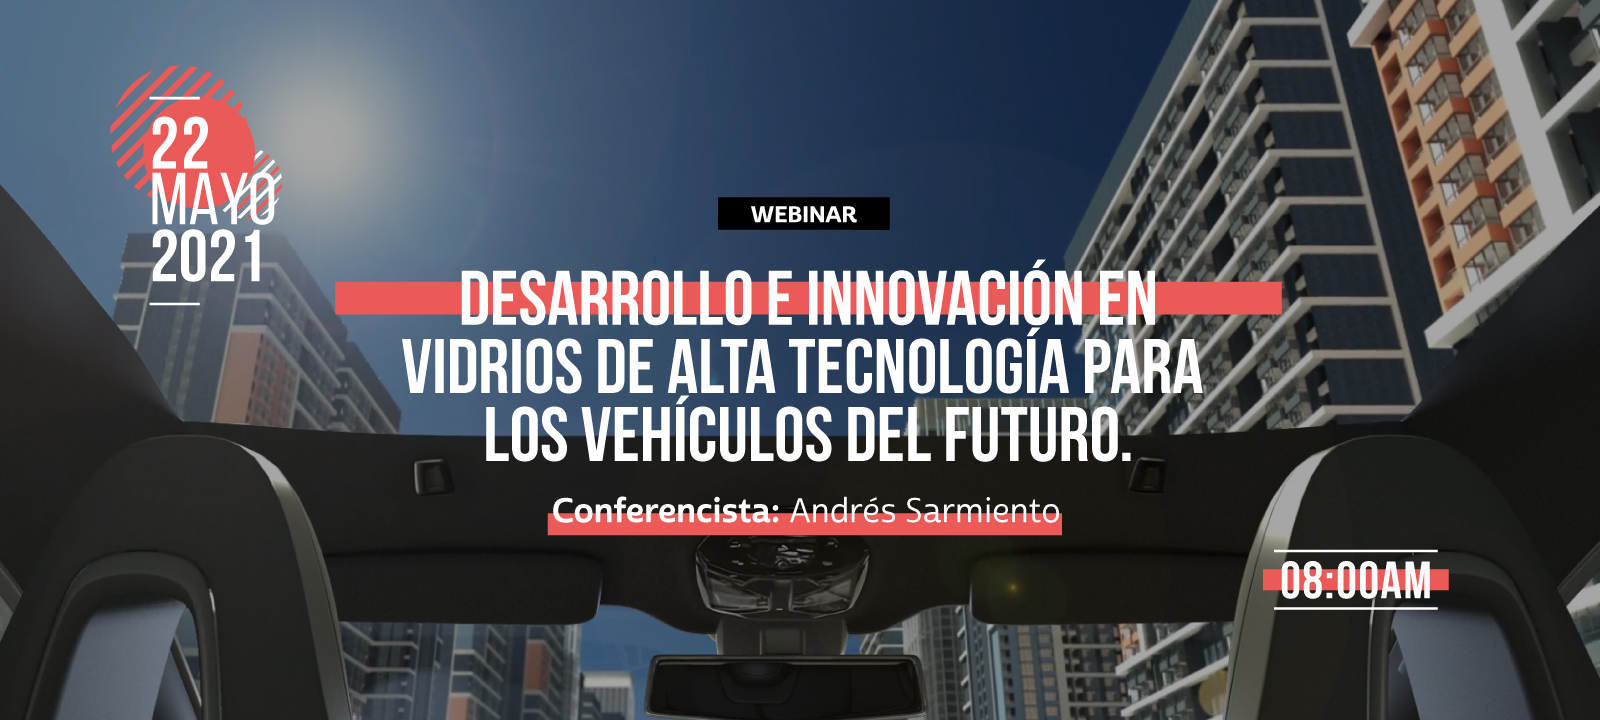 Desarrollo e innovación en vidrios de alta tecnología para los vehículos del futuro.